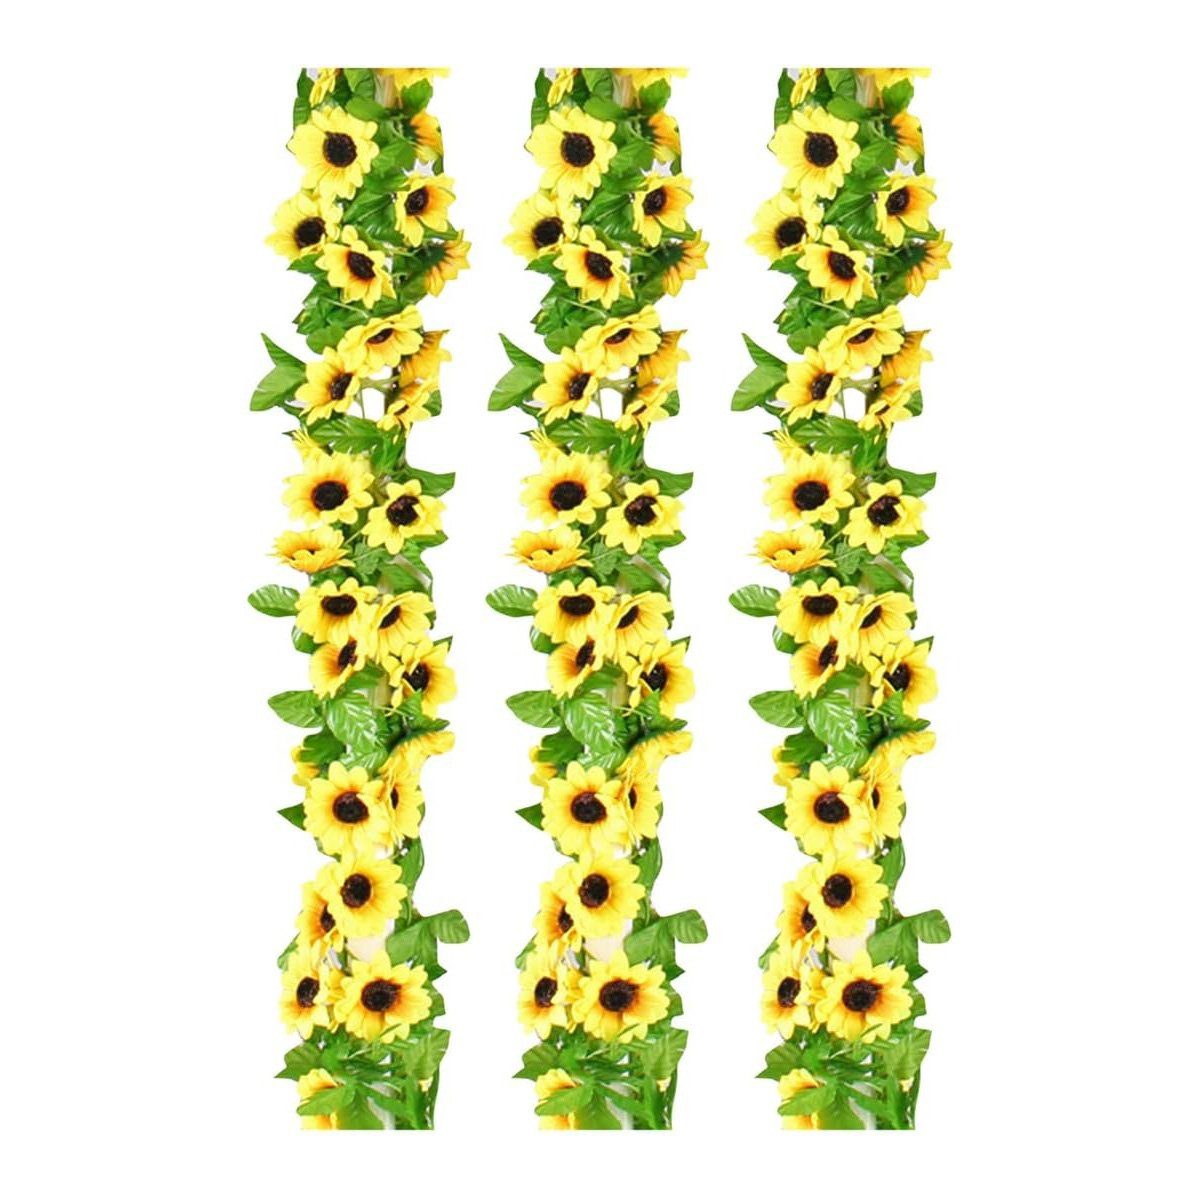 Kunstblume 3 Blumen, Stück Seidenprodukte, Girlande, künstliche hängende götäzer, Sonnenblumenrebe, Blumenarrangements, Raumdekoration